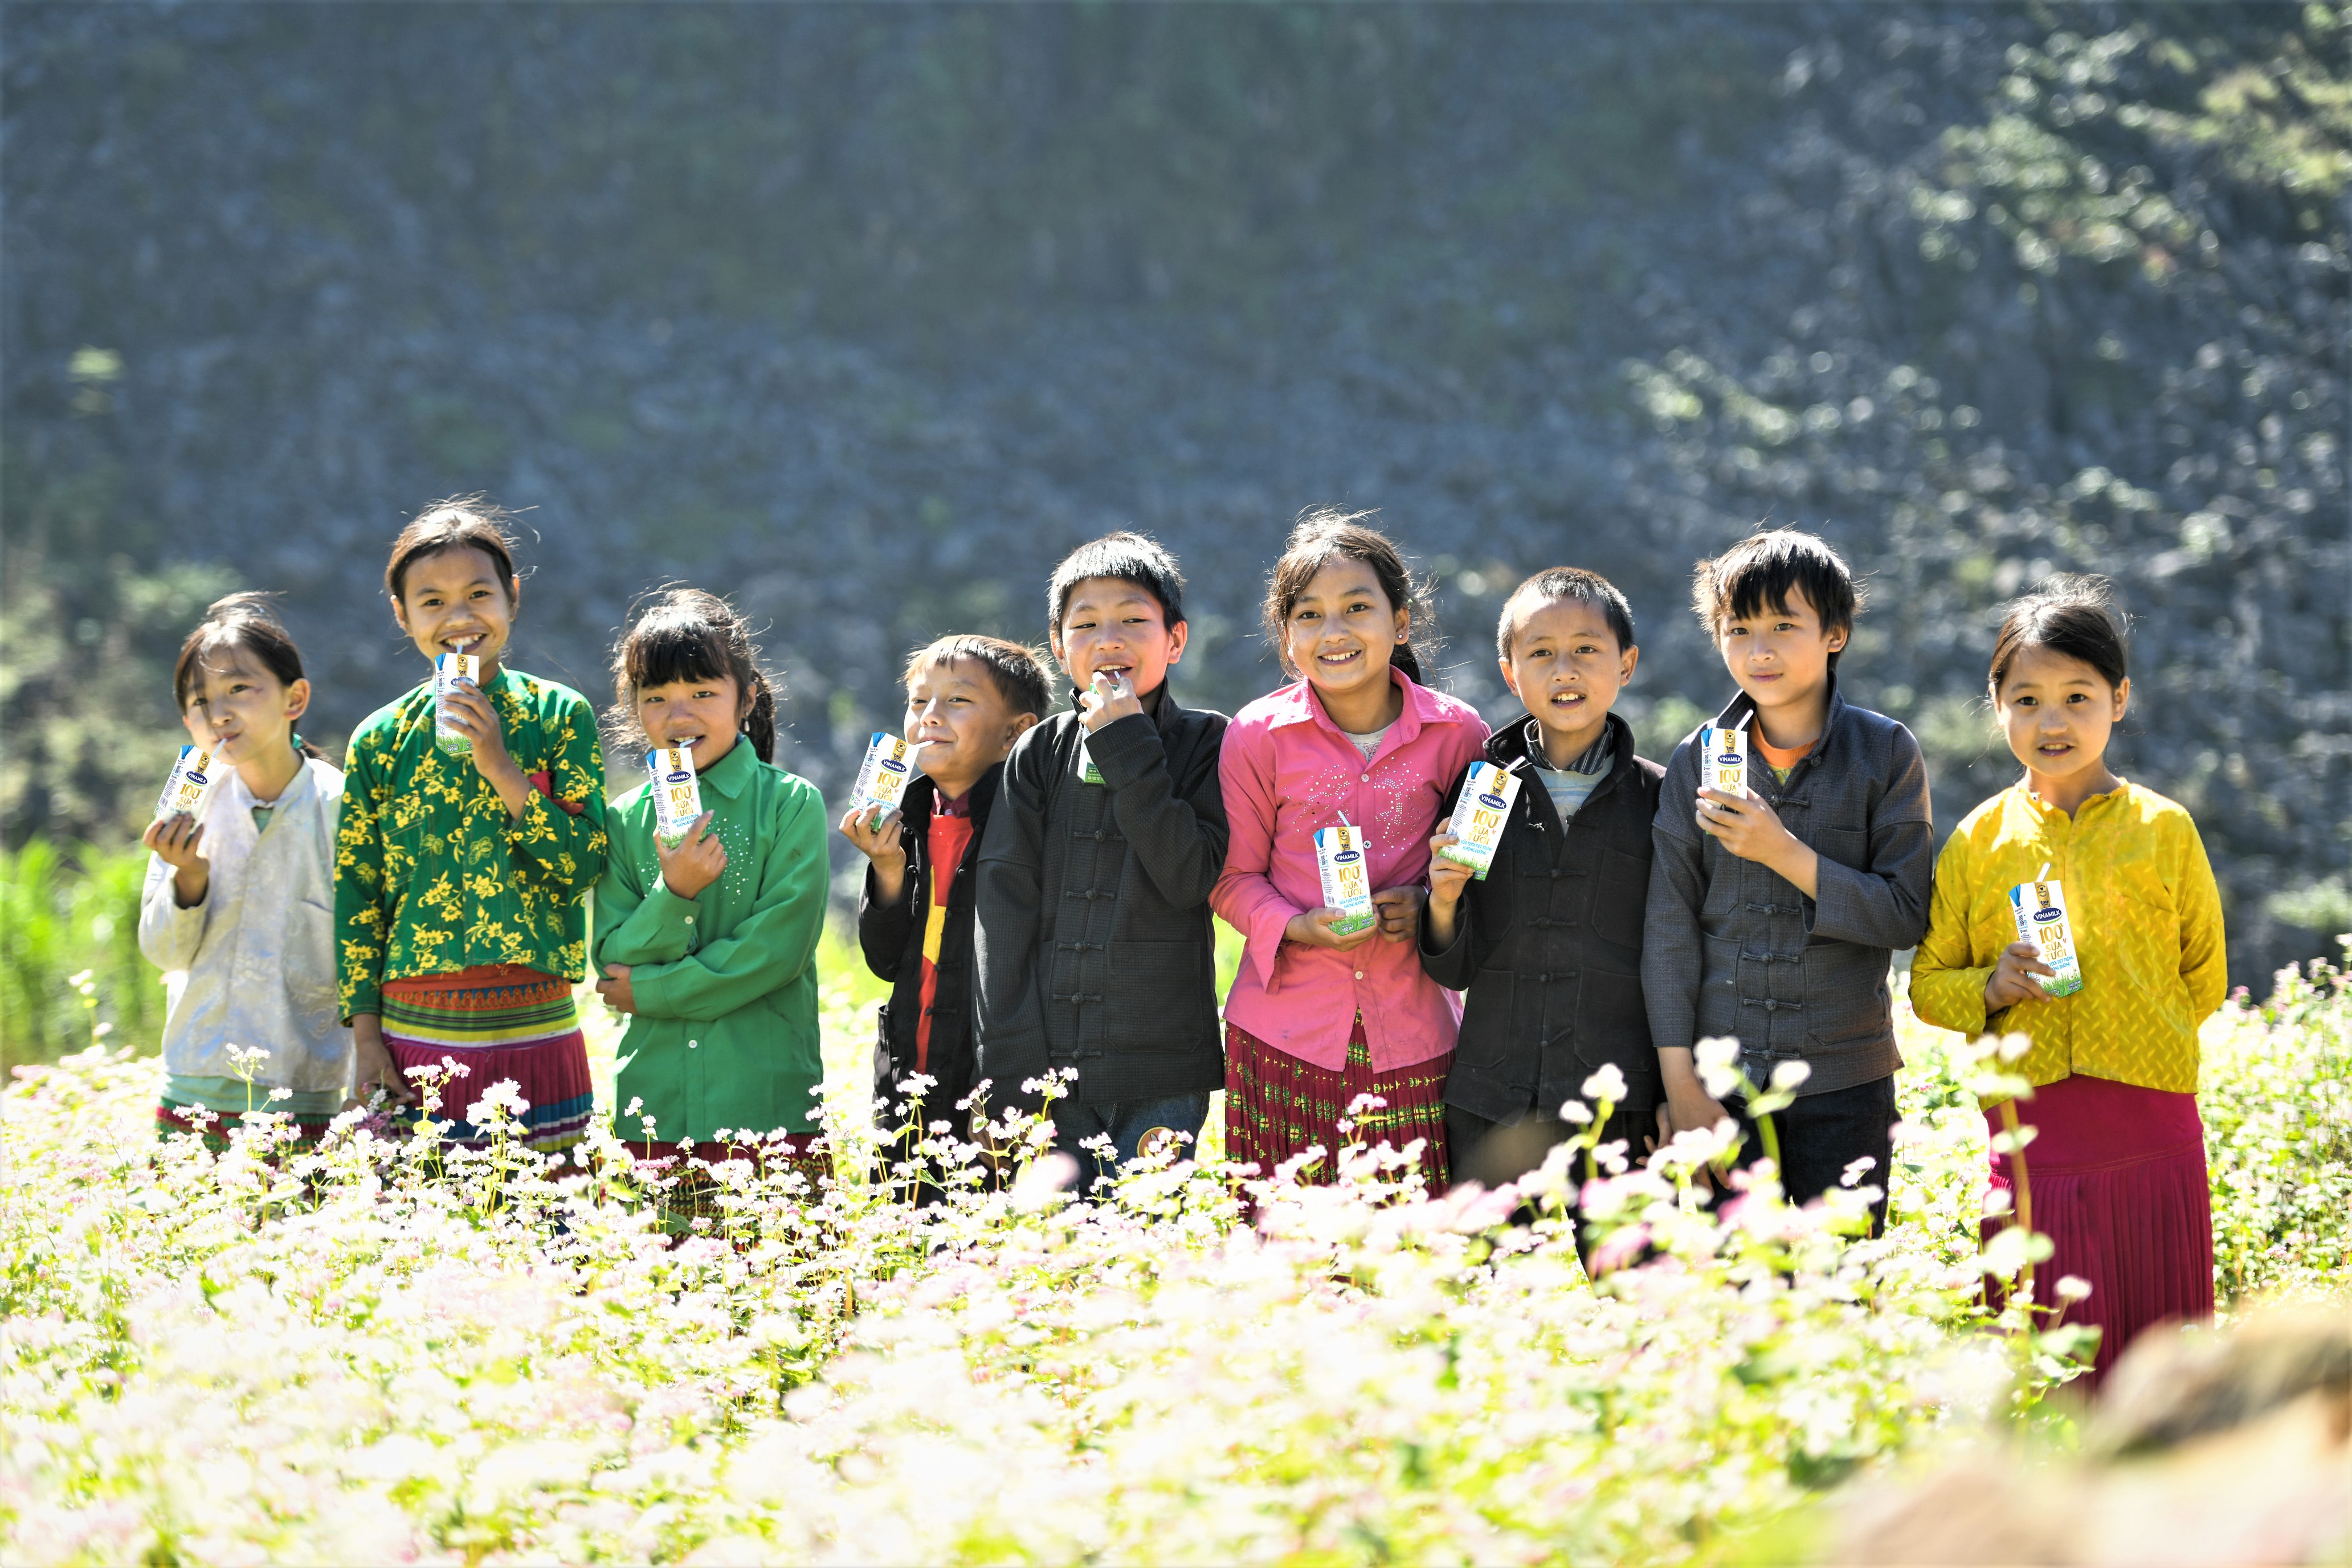 Trẻ em vùng cao Hà Giang có sự chân thành và dễ thương trong ánh mắt. Họ mang niềm vui đơn giản từ chính cuộc sống bản địa. Những hình ảnh về trẻ em Hà Giang sẽ sưởi ấm trái tim bạn và đưa bạn đến một vùng đất đẹp và thanh bình giữa đất nước.